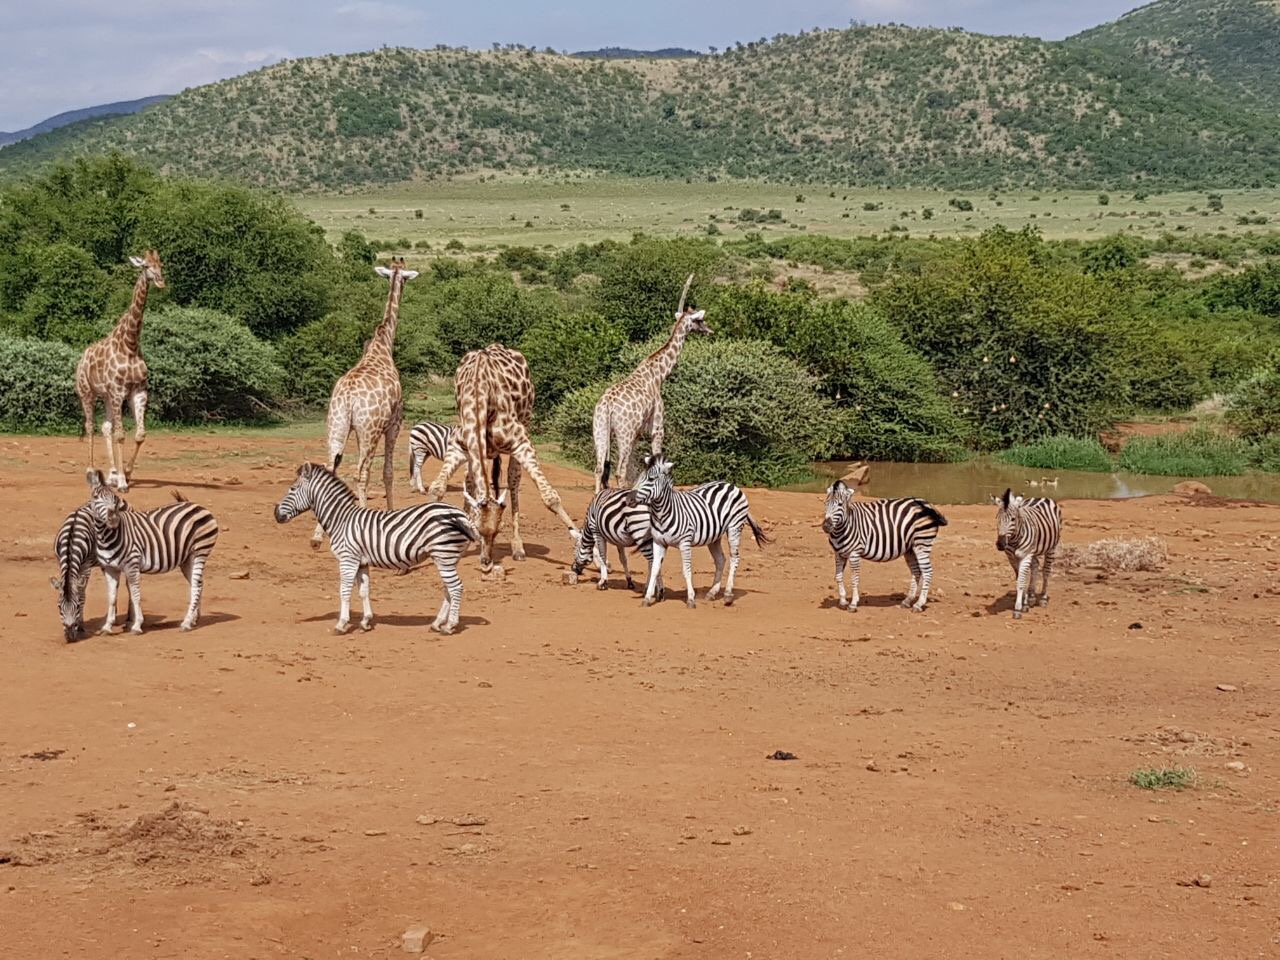 Zebras and Giraffes at a Waterhole.